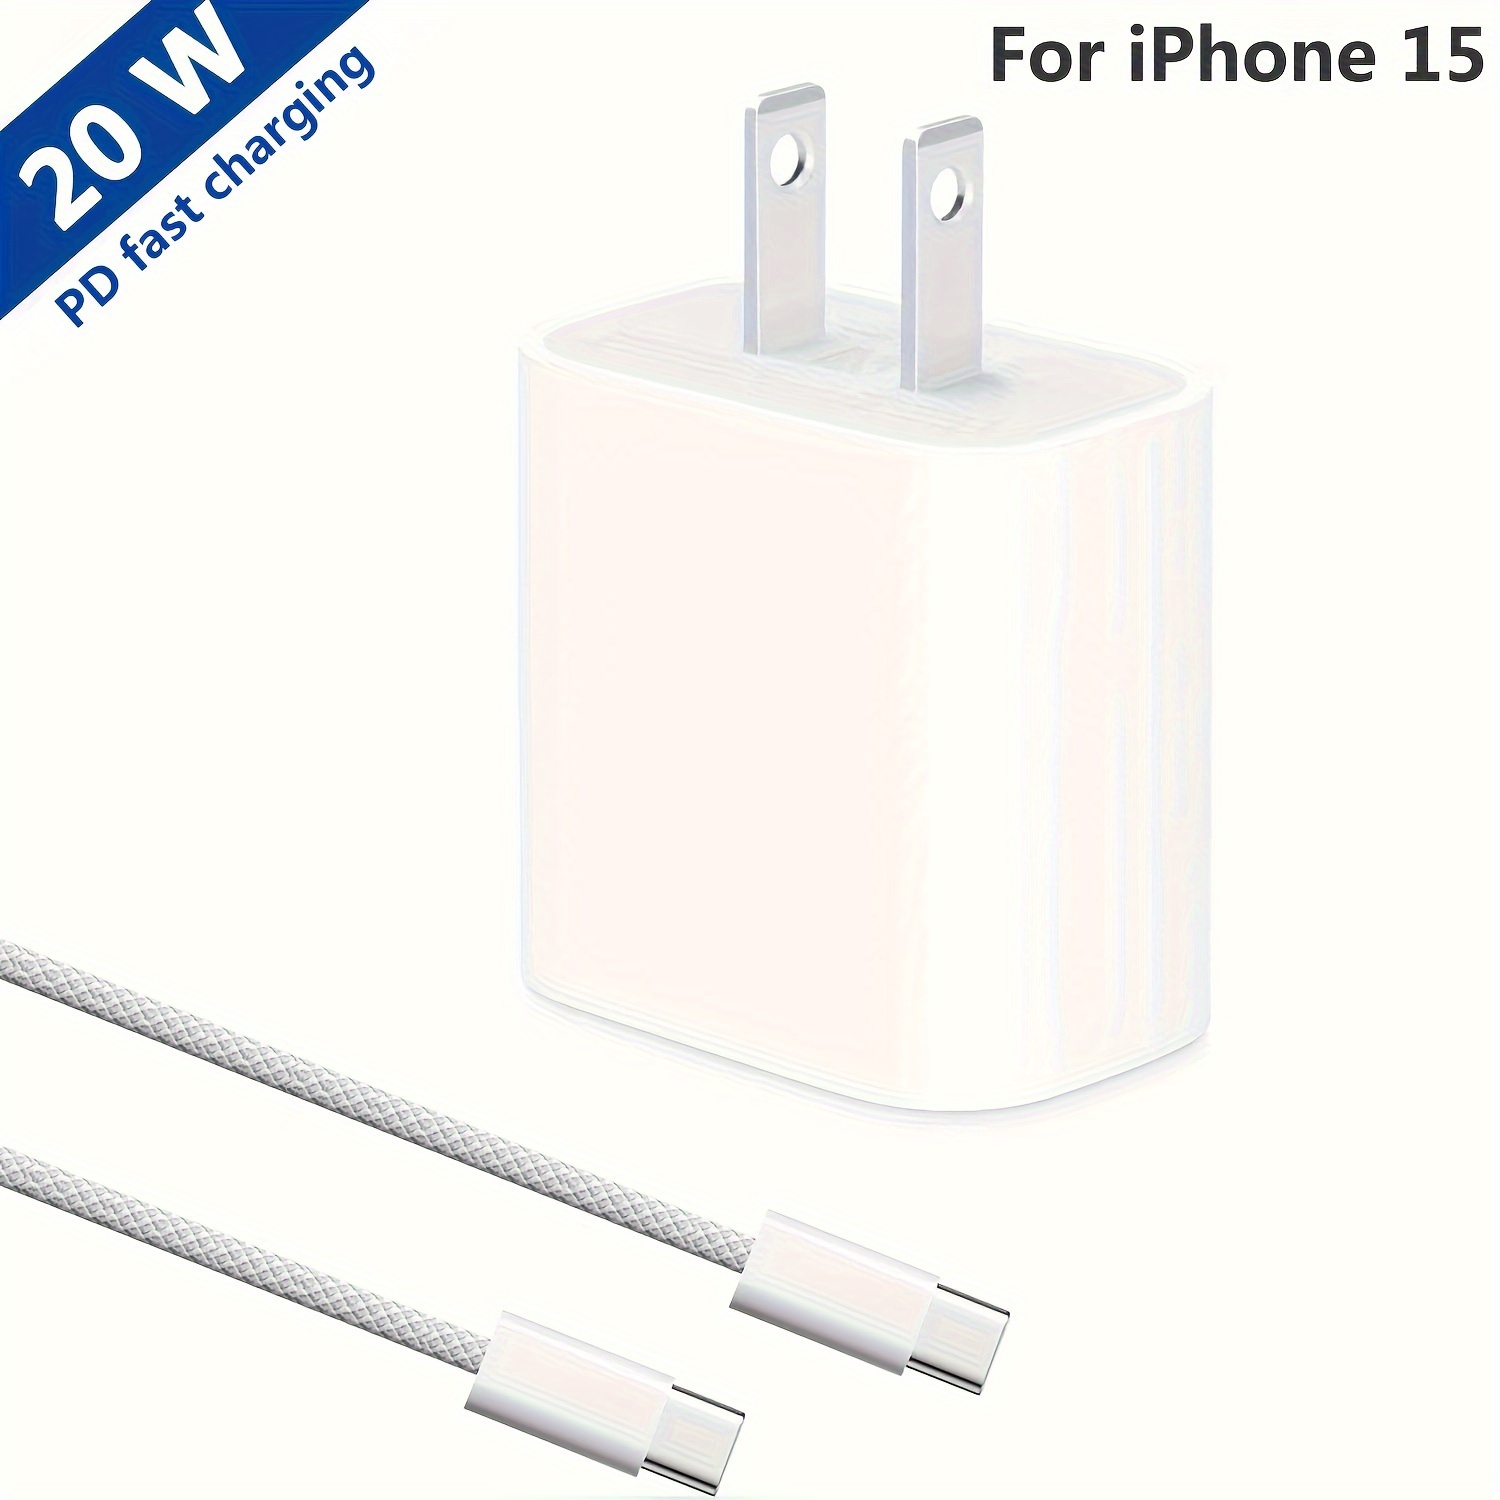  Cargador para iPhone 15 y cable tipo C a C de 6 pies de largo,  bloque de carga rápida USB C de 20 W, enchufe de pared, adaptador de  corriente de